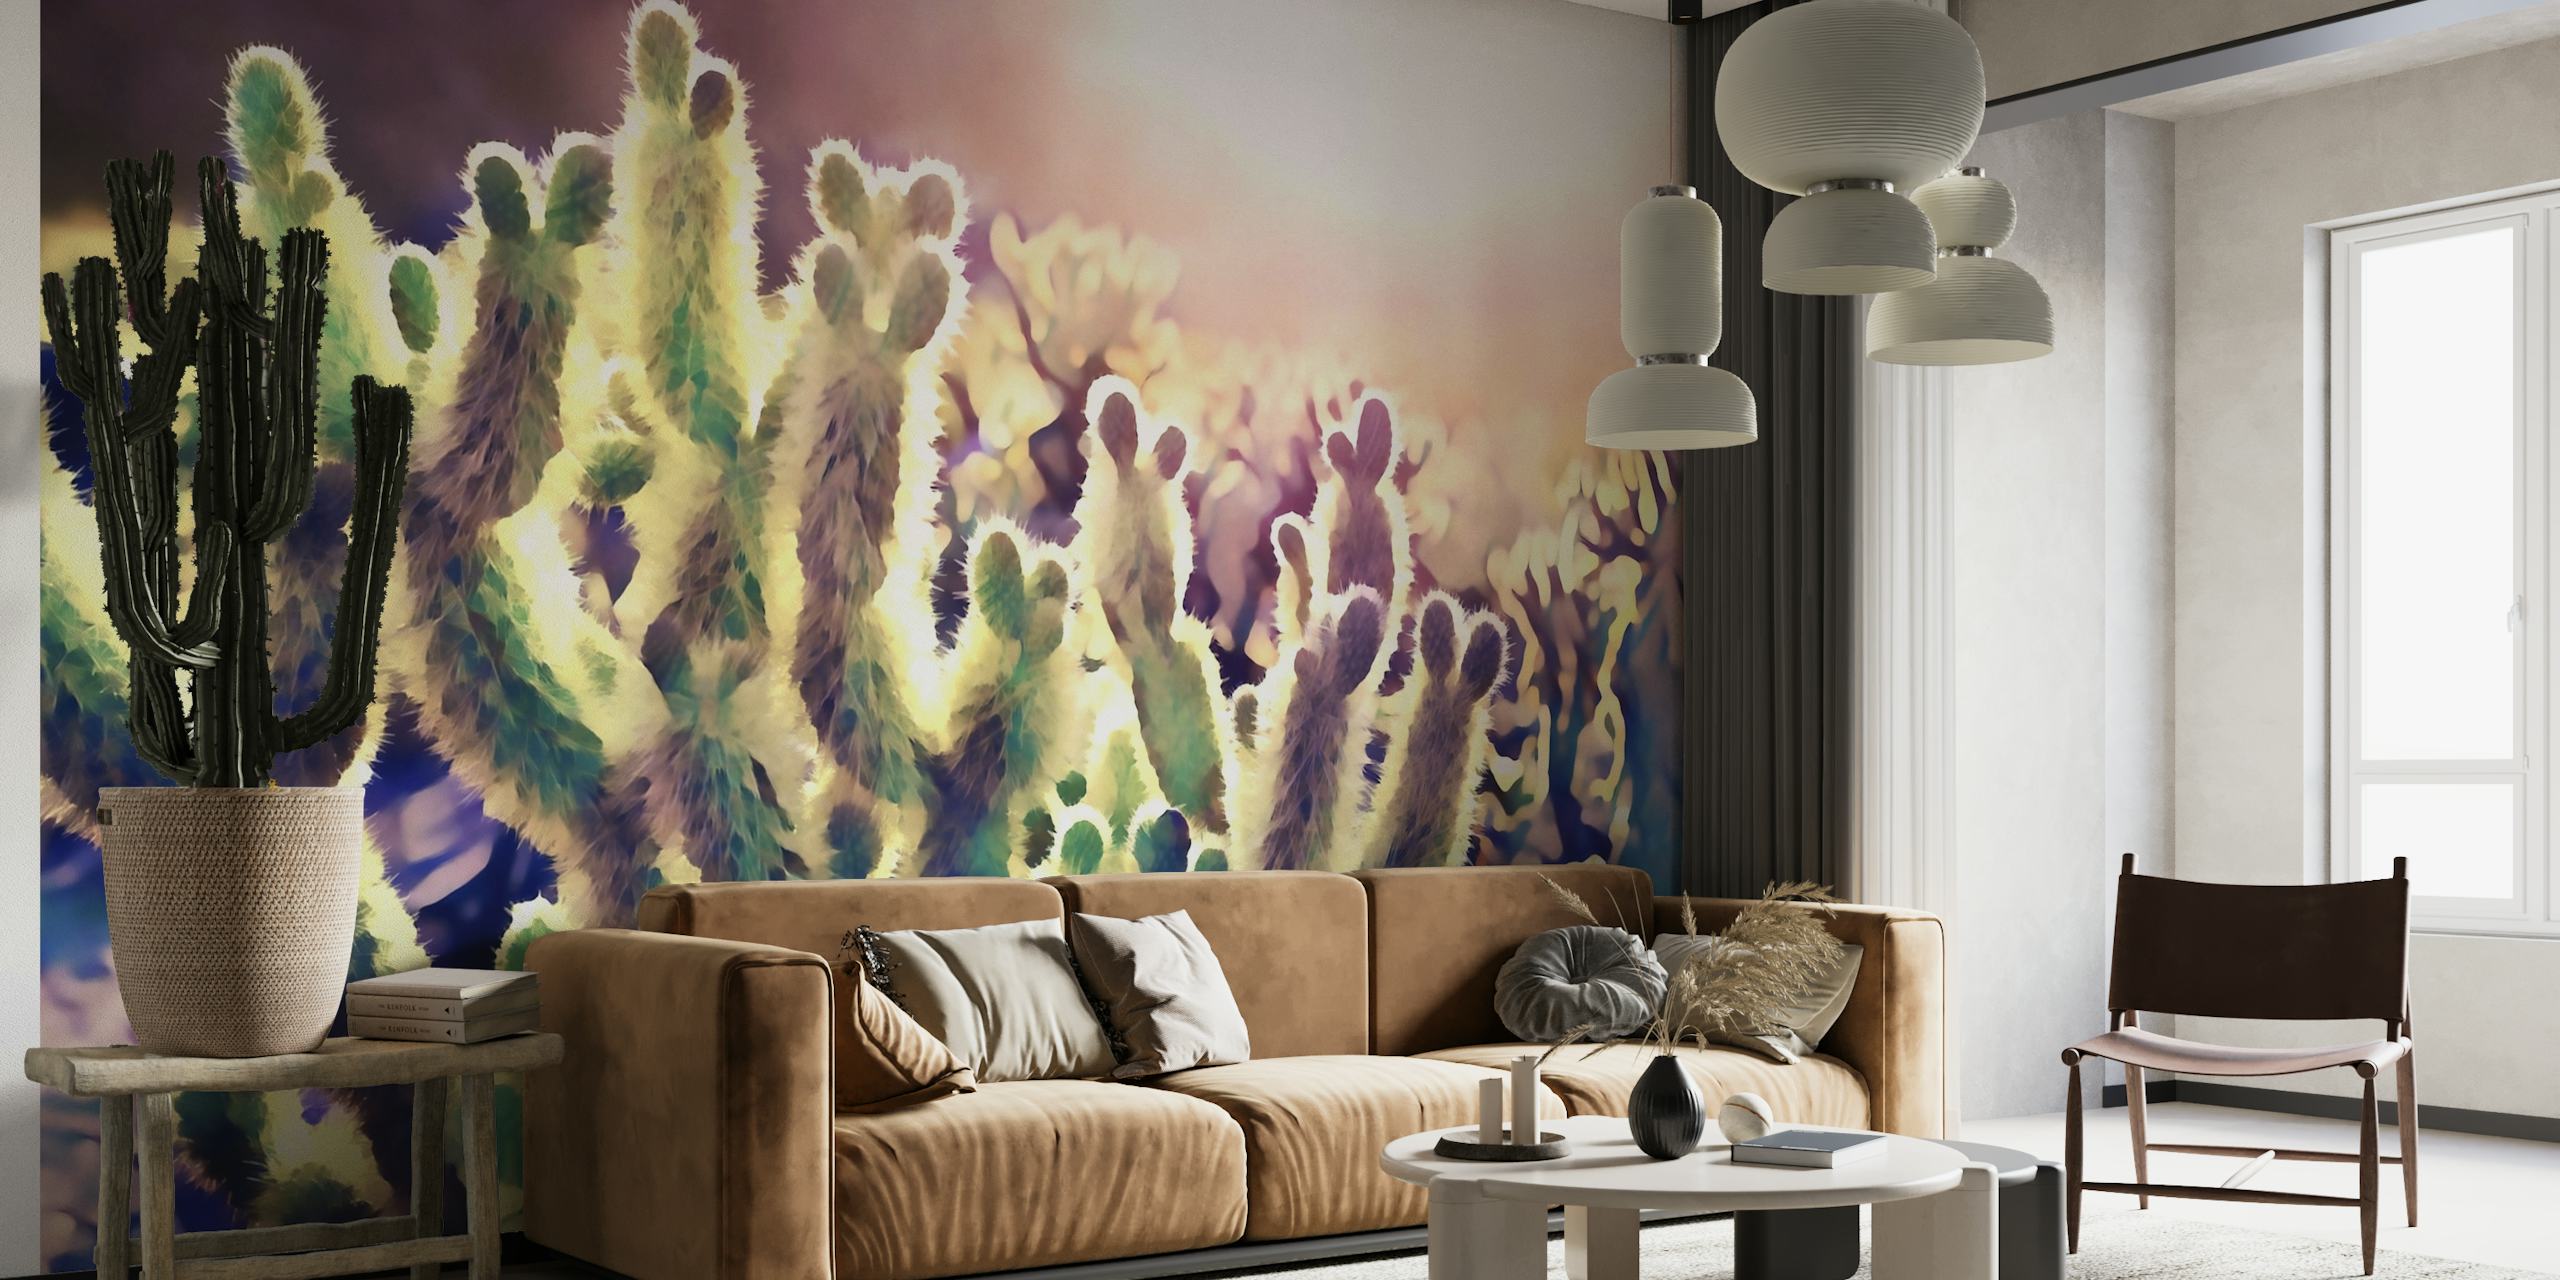 Sunset Desert Cacti wallpaper